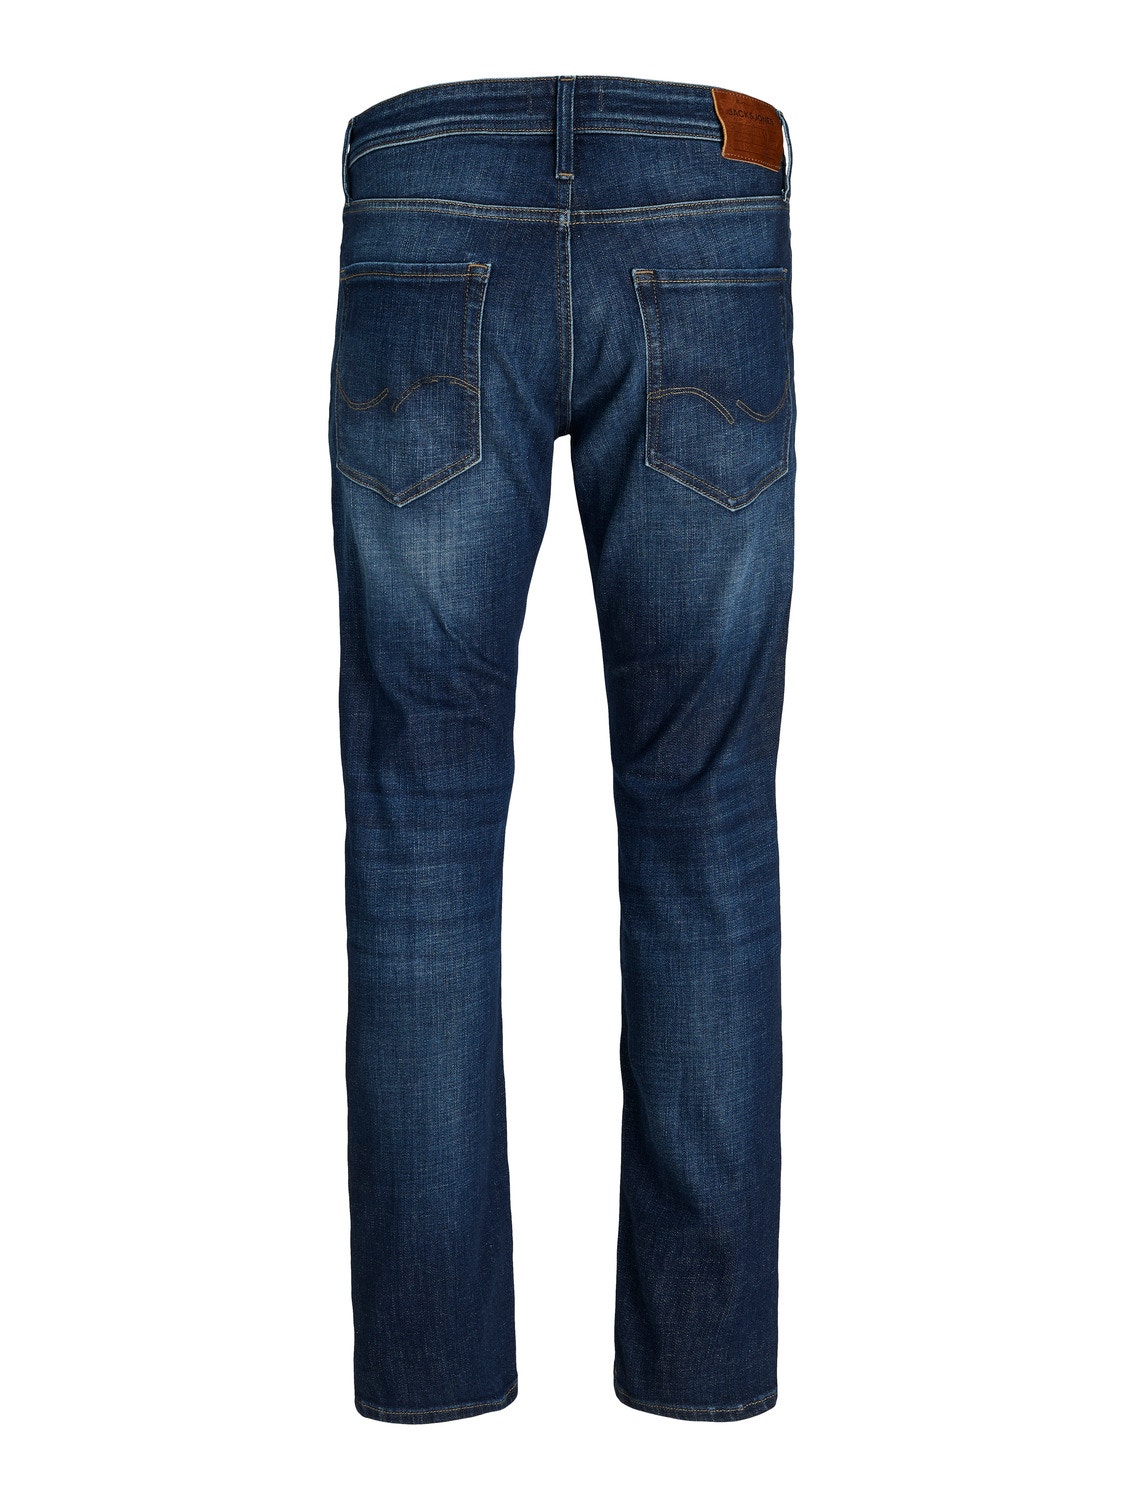 Jack & Jones JJIMIKE JJORIGINAL JOS 211 Tapered fit jeans -Blue Denim - 12229855